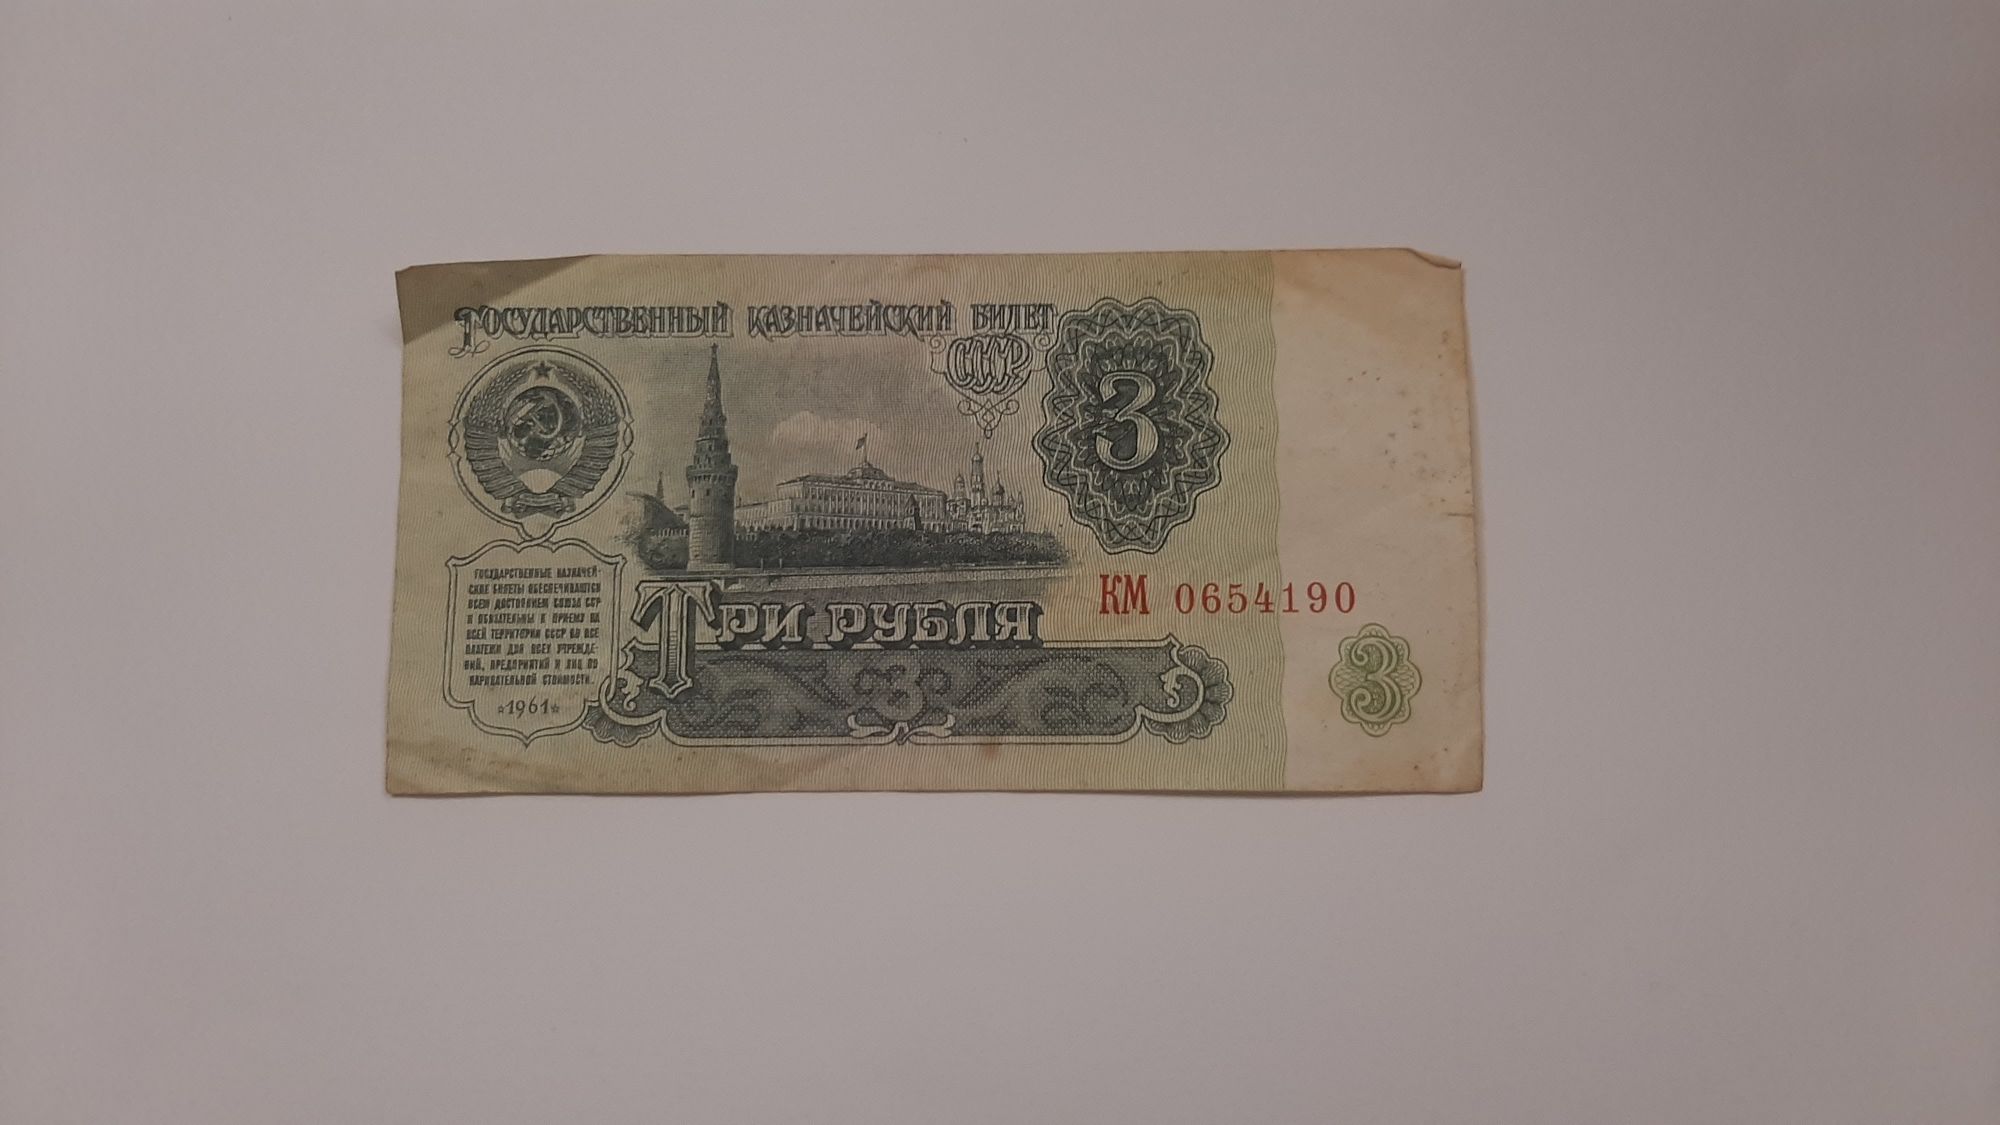 Купюра три рубля 1961 года. Государственный казначейский билет.